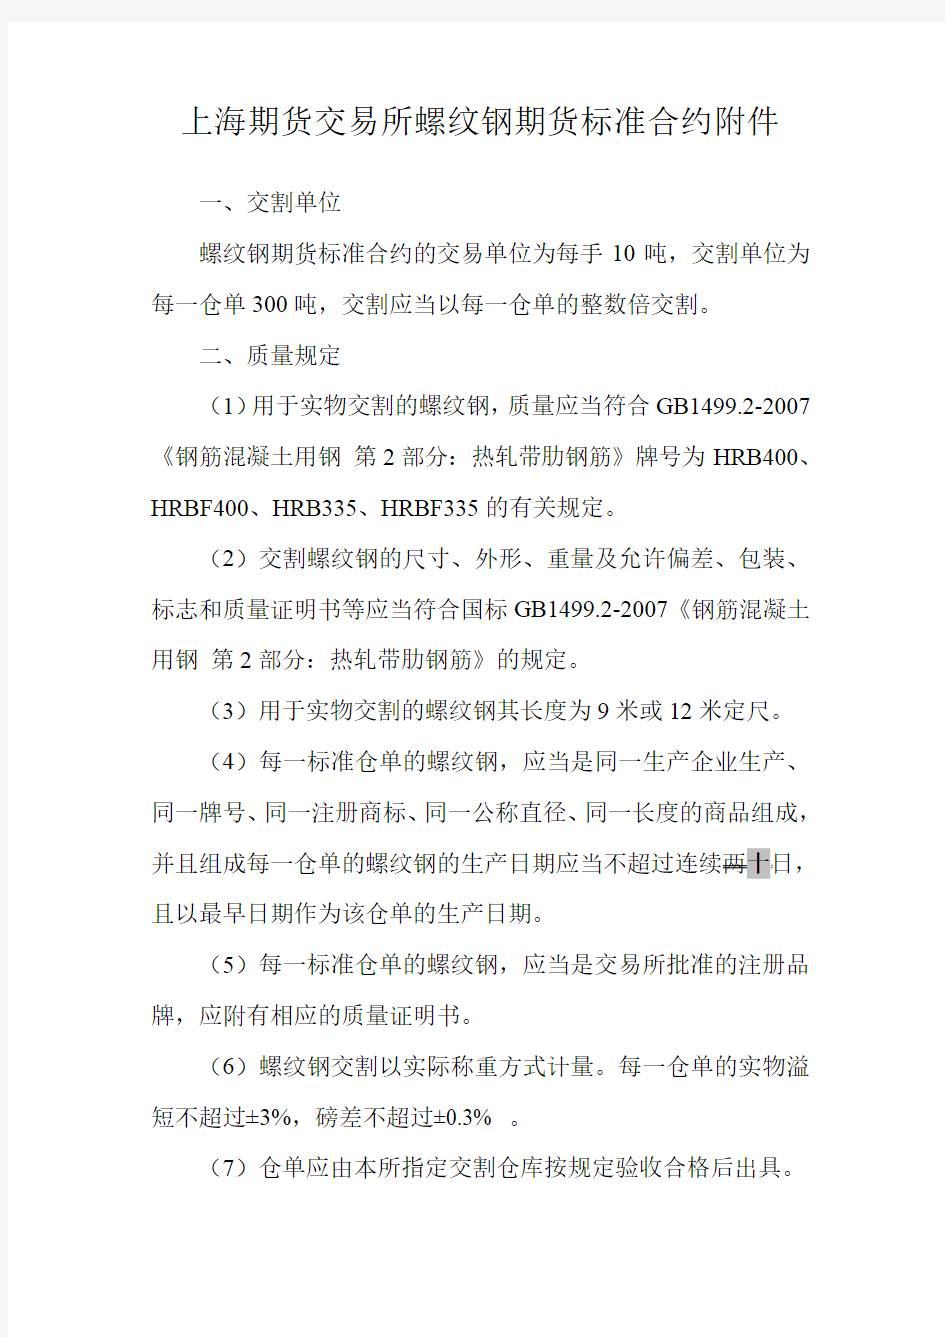 《上海期货交易所螺纹钢期货标准合约》 修订案